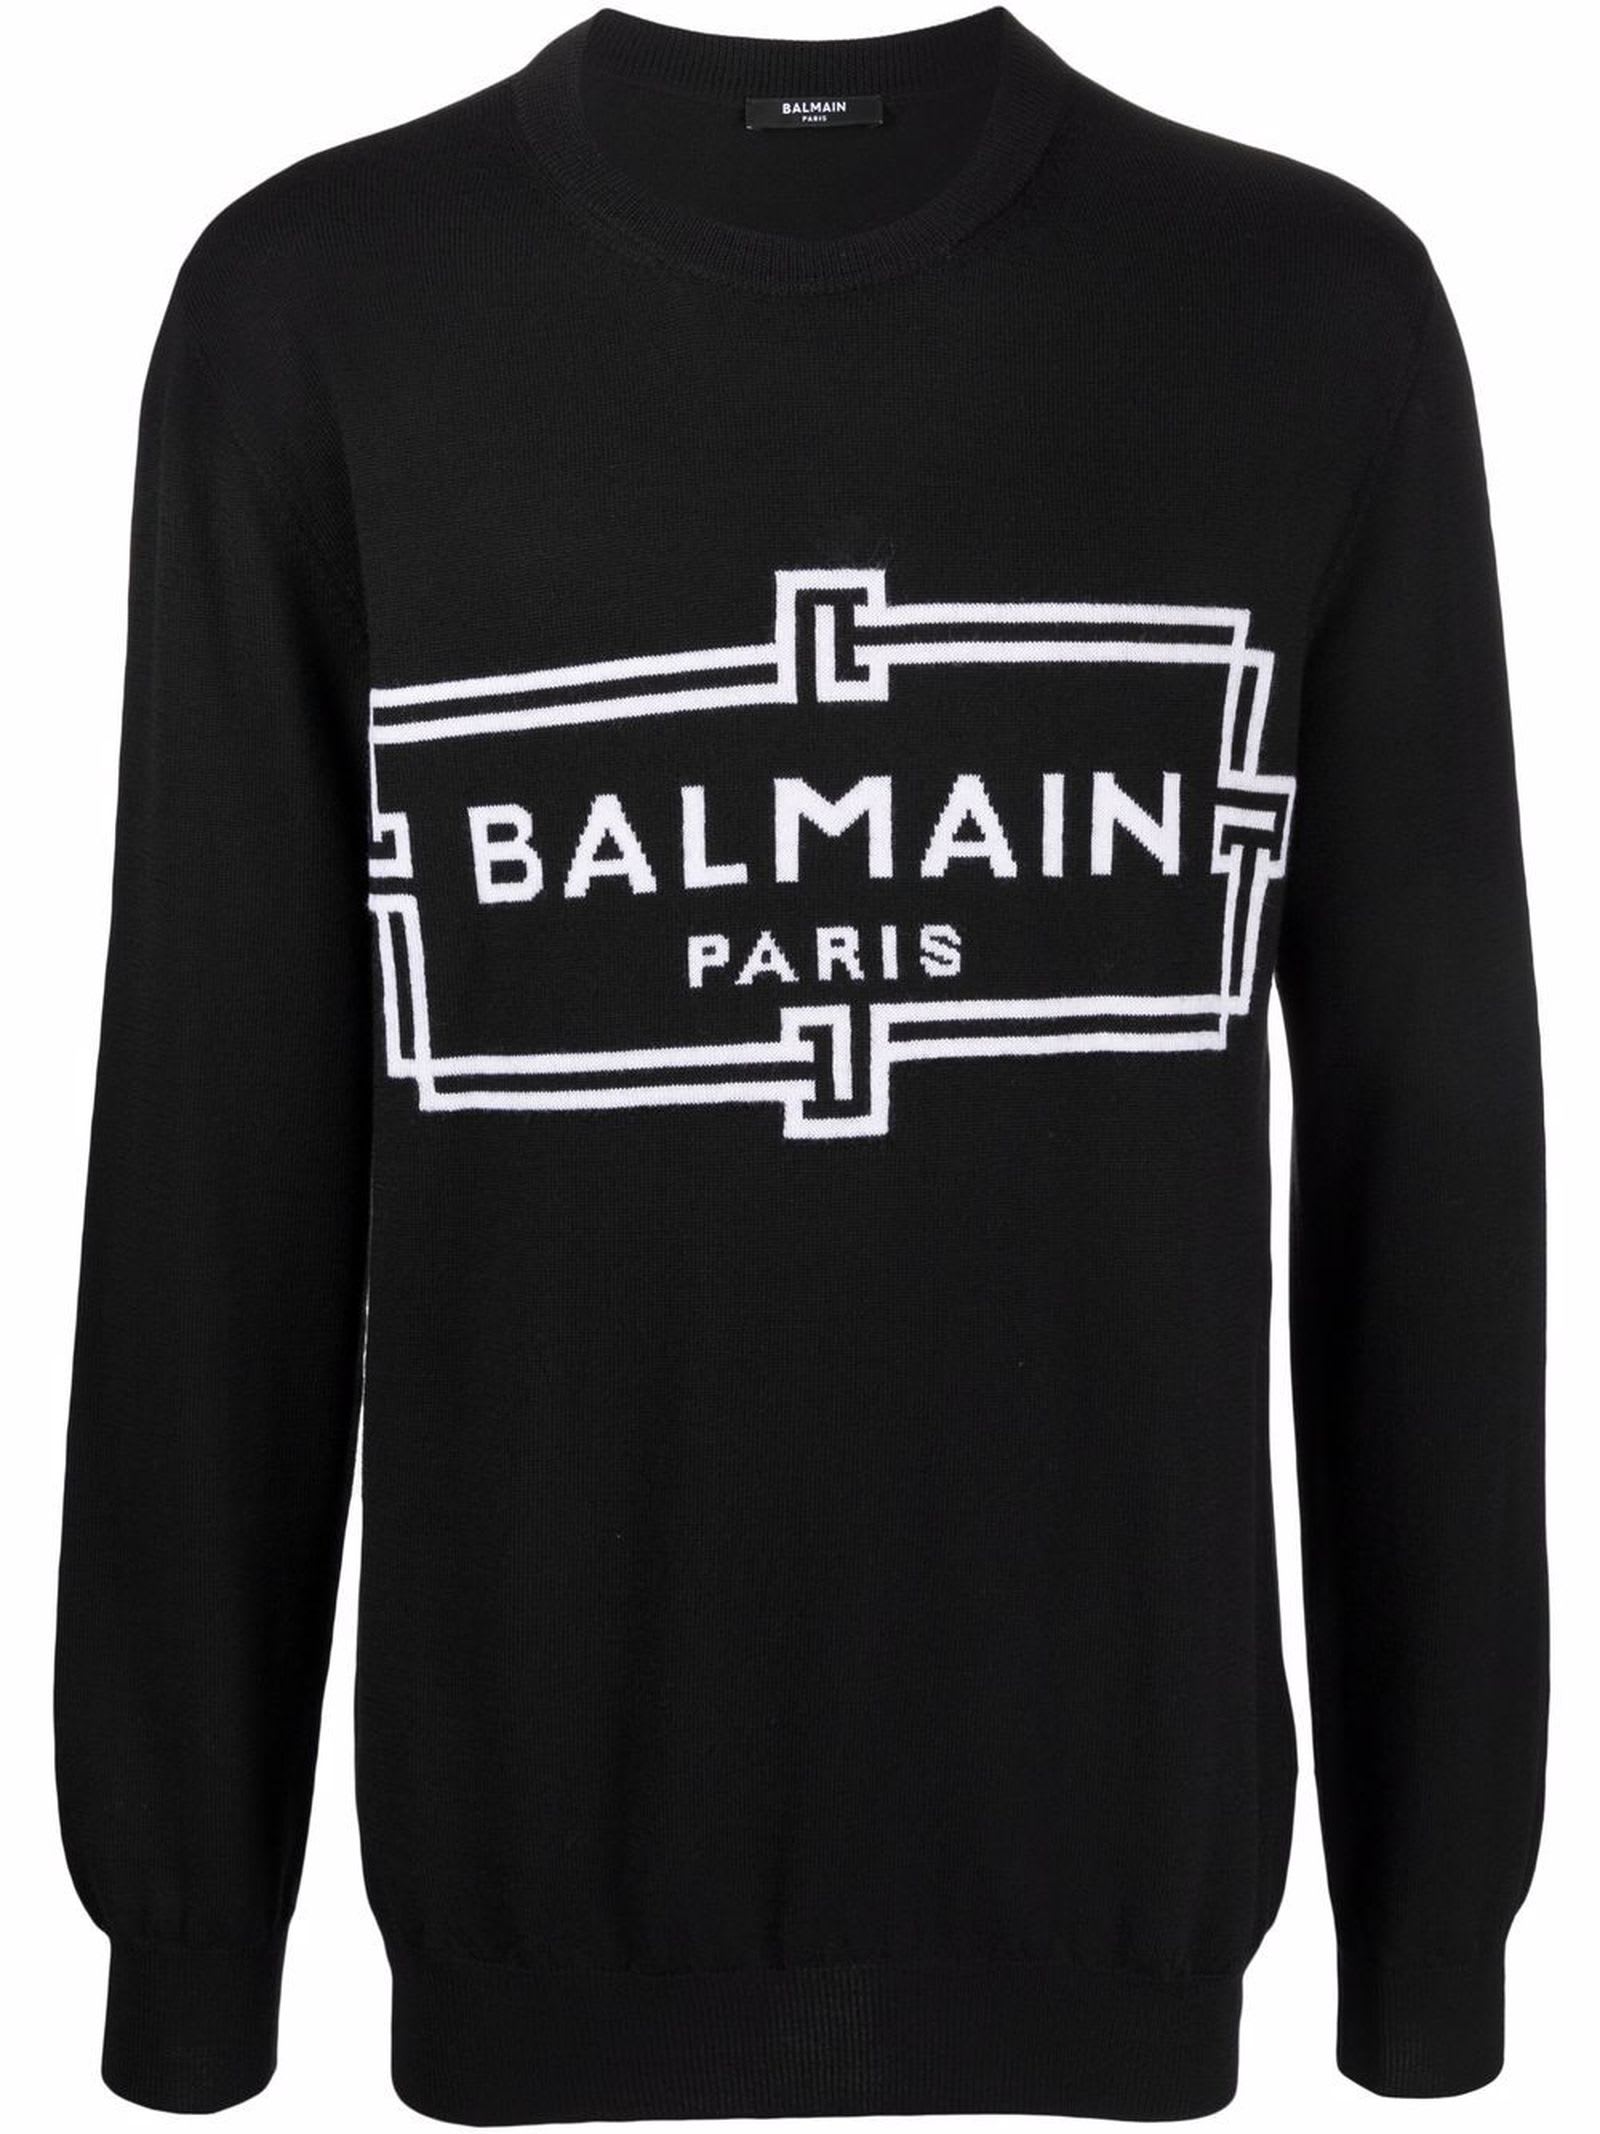 Balmain Black Merino Wool Sweater